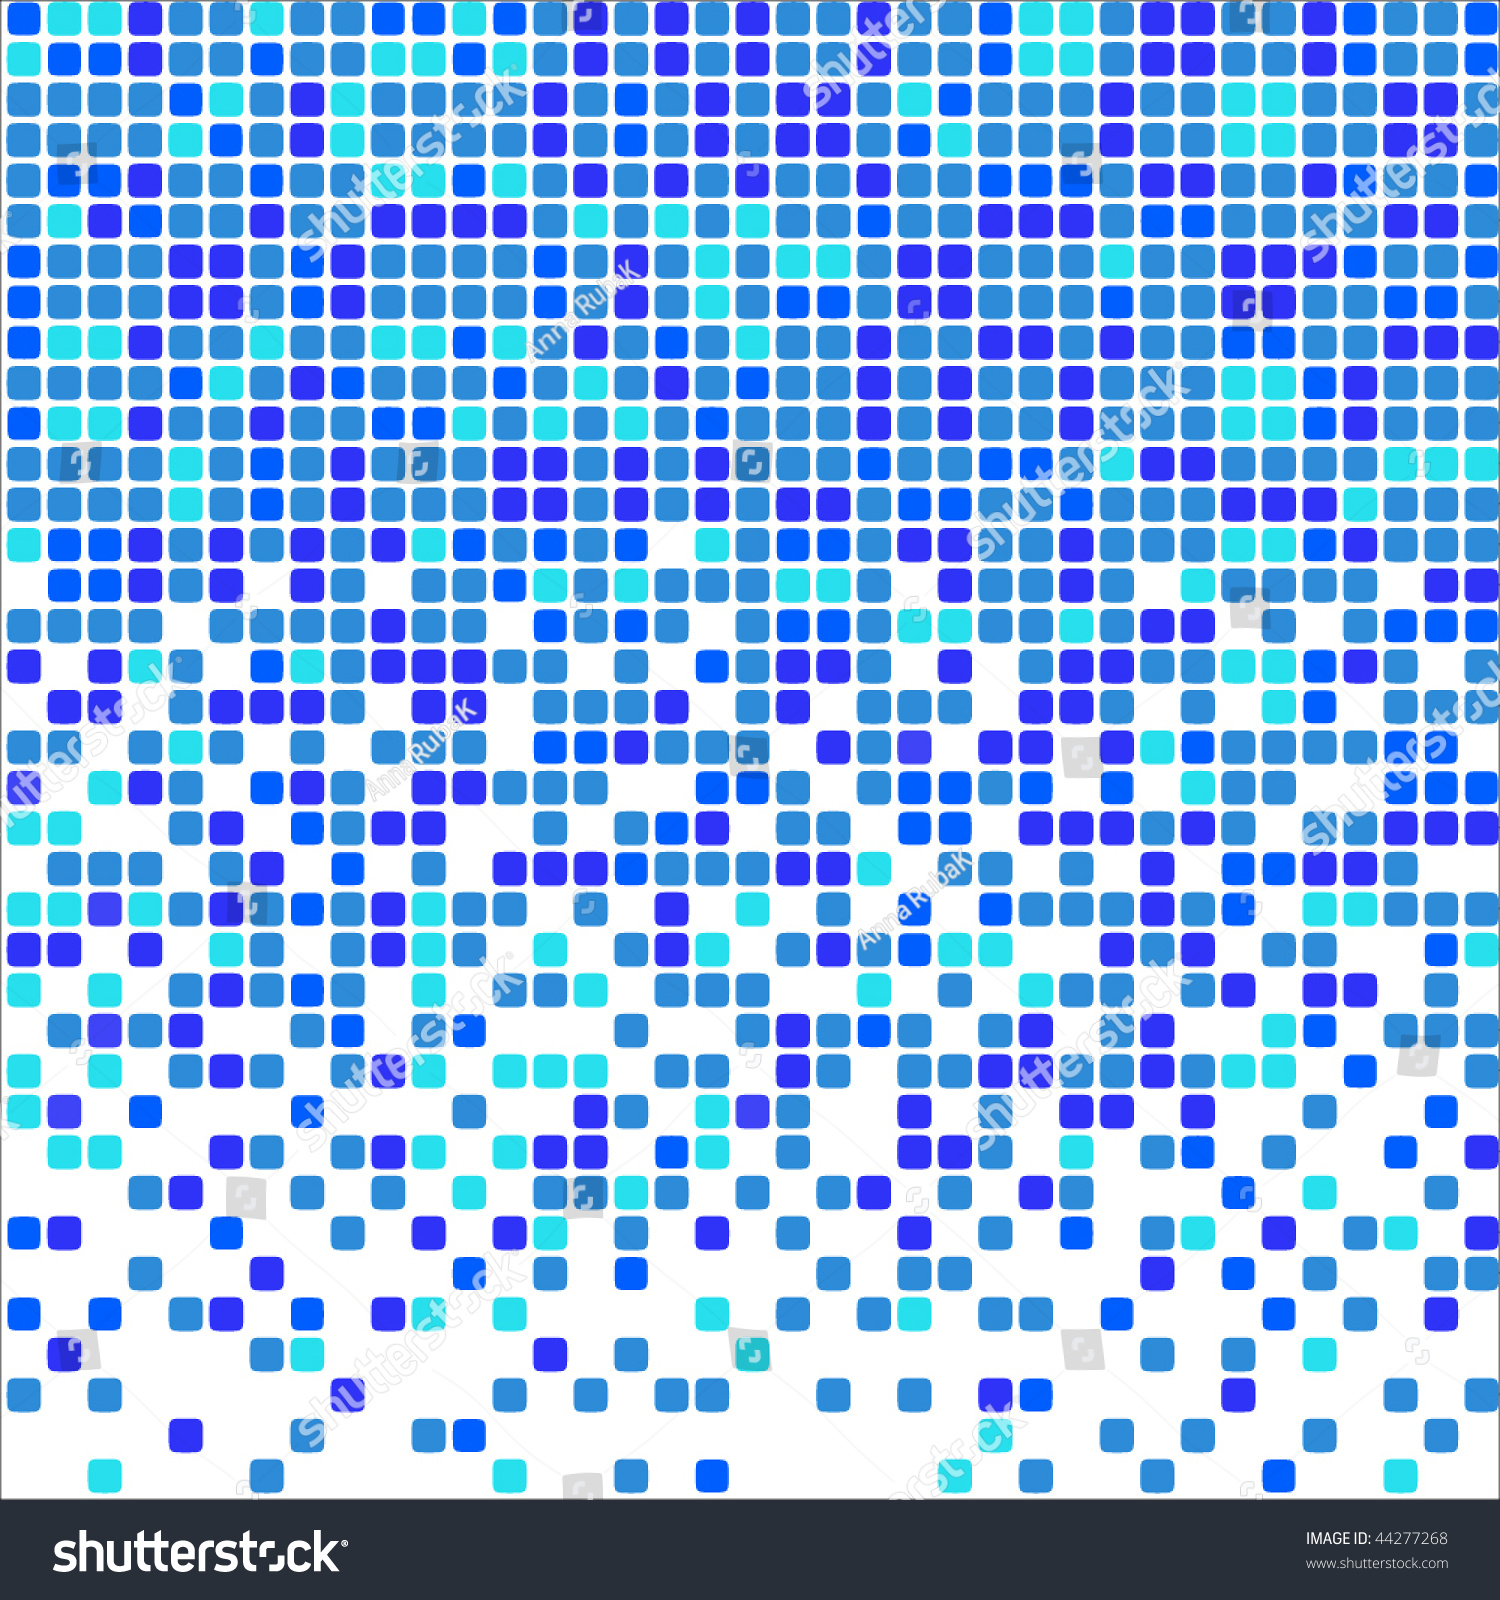 Blue Vector Mosaic - 44277268 : Shutterstock